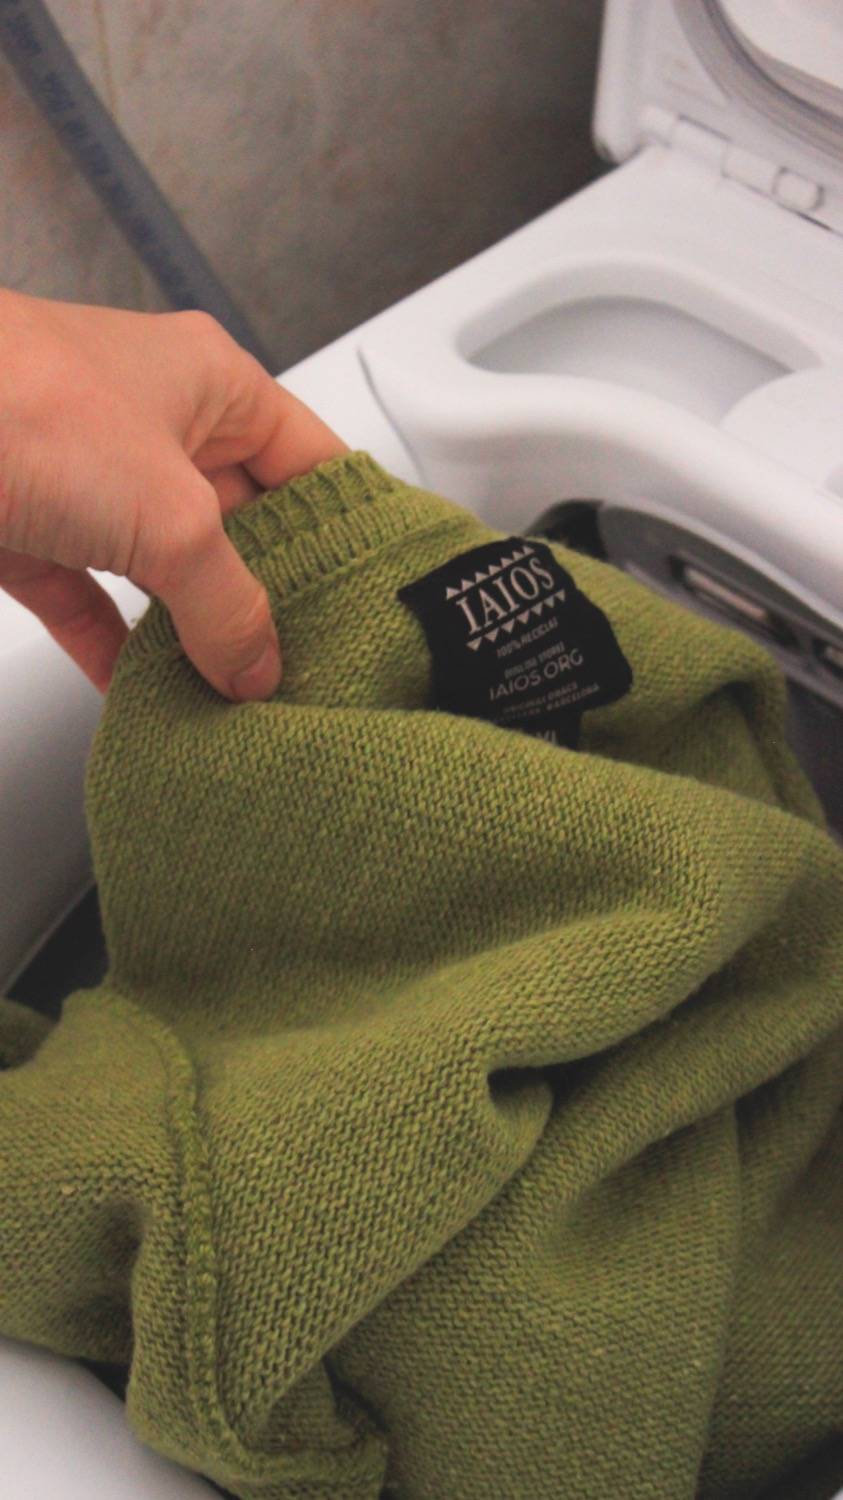 Un jersei tornat del revés sortint d'una rentadora